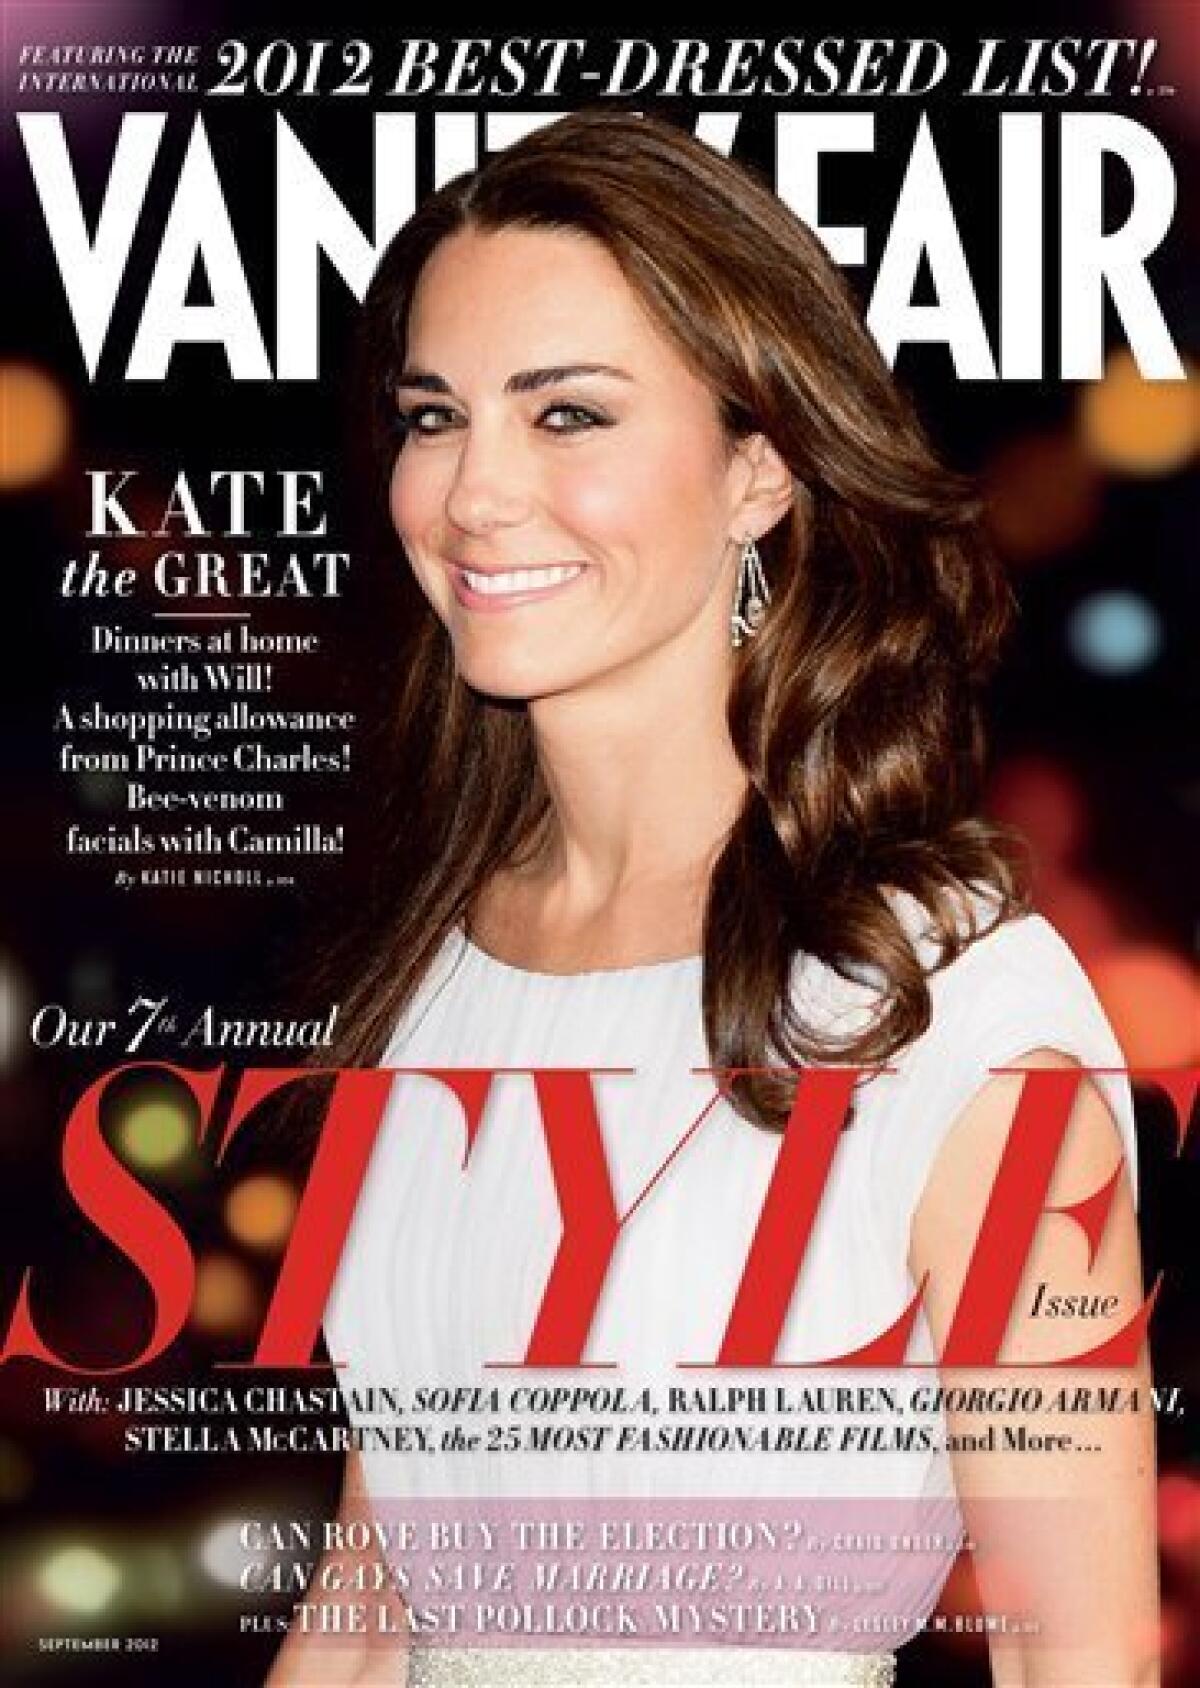 Kate Middleton returns to Vanity Fair fashion list - The San Diego